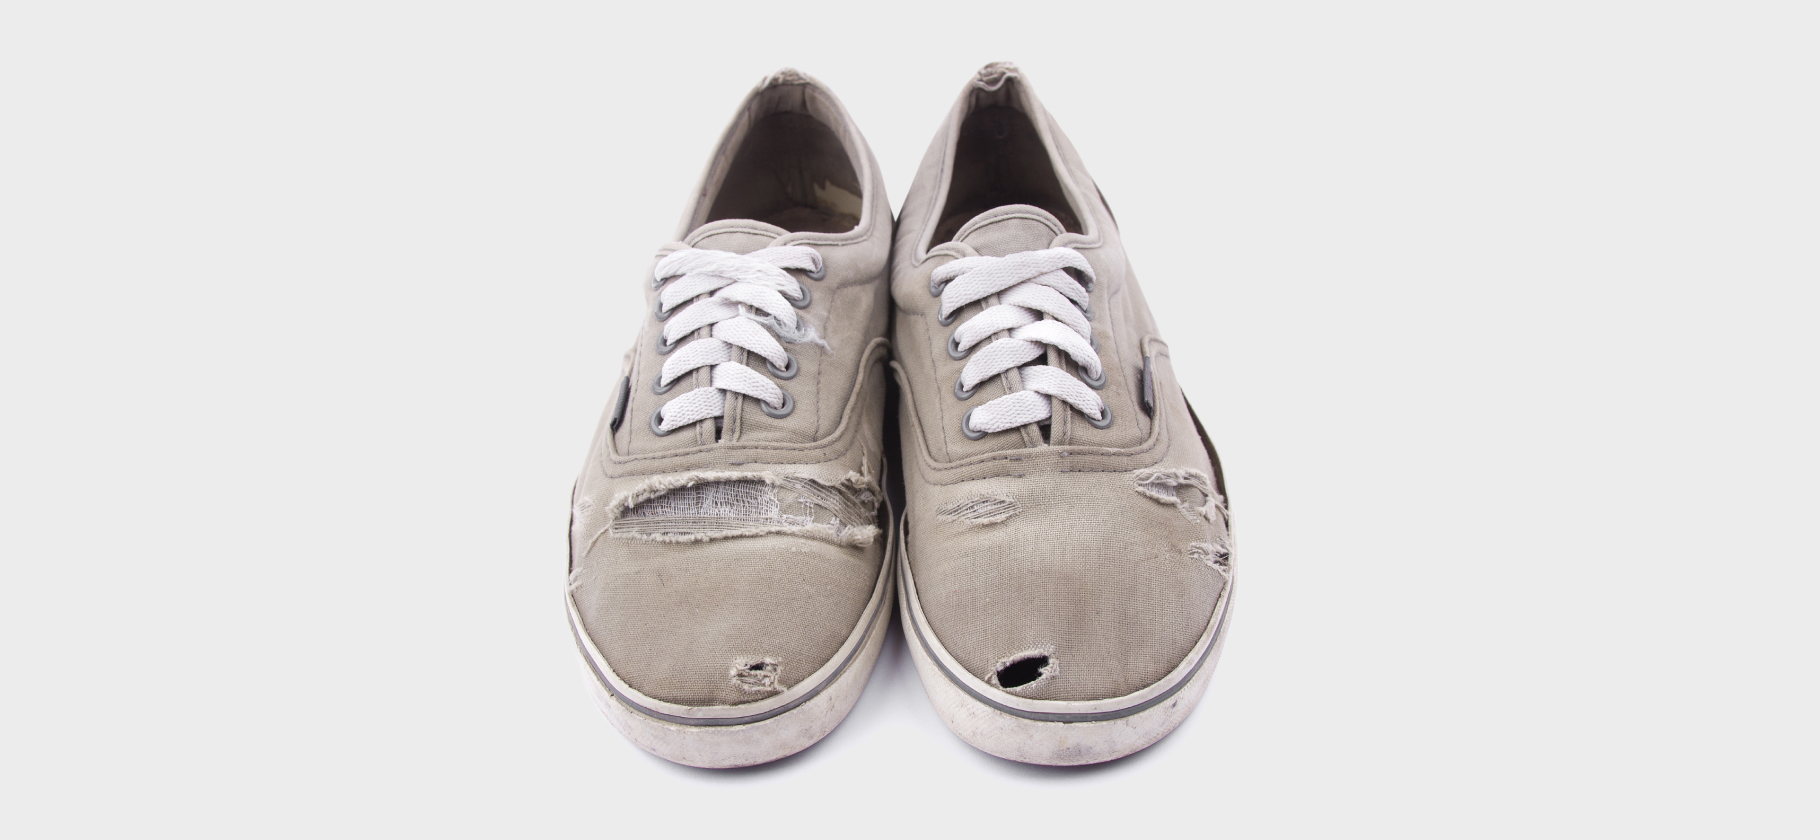 «Развалится и расклеится»: 9 брендов обуви, которую не посоветуешь никому